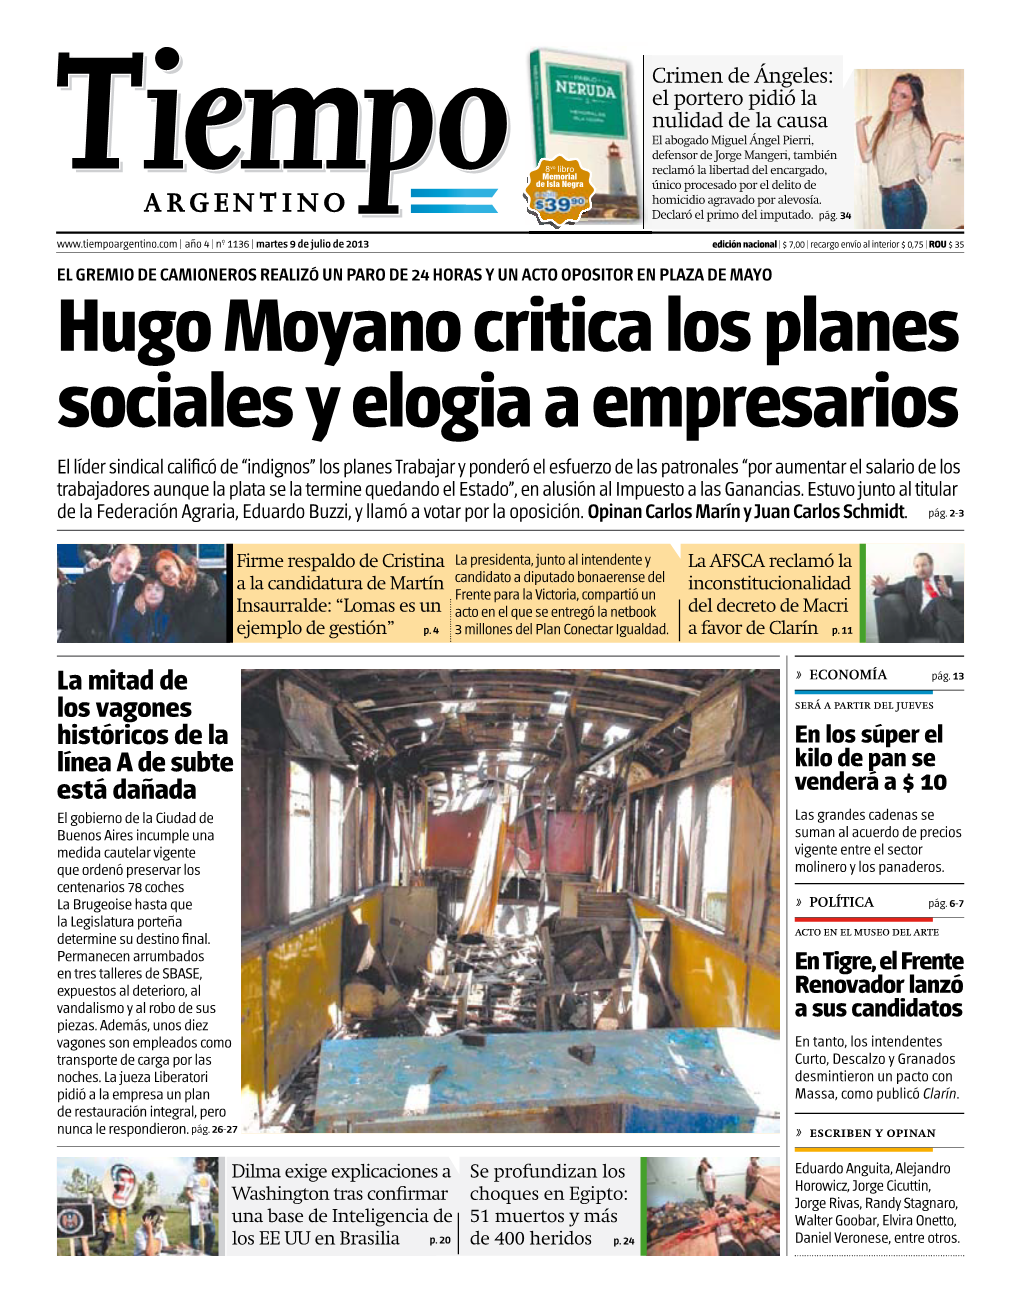 Hugo Moyano Critica Los Planes Sociales Y Elogia a Empresarios